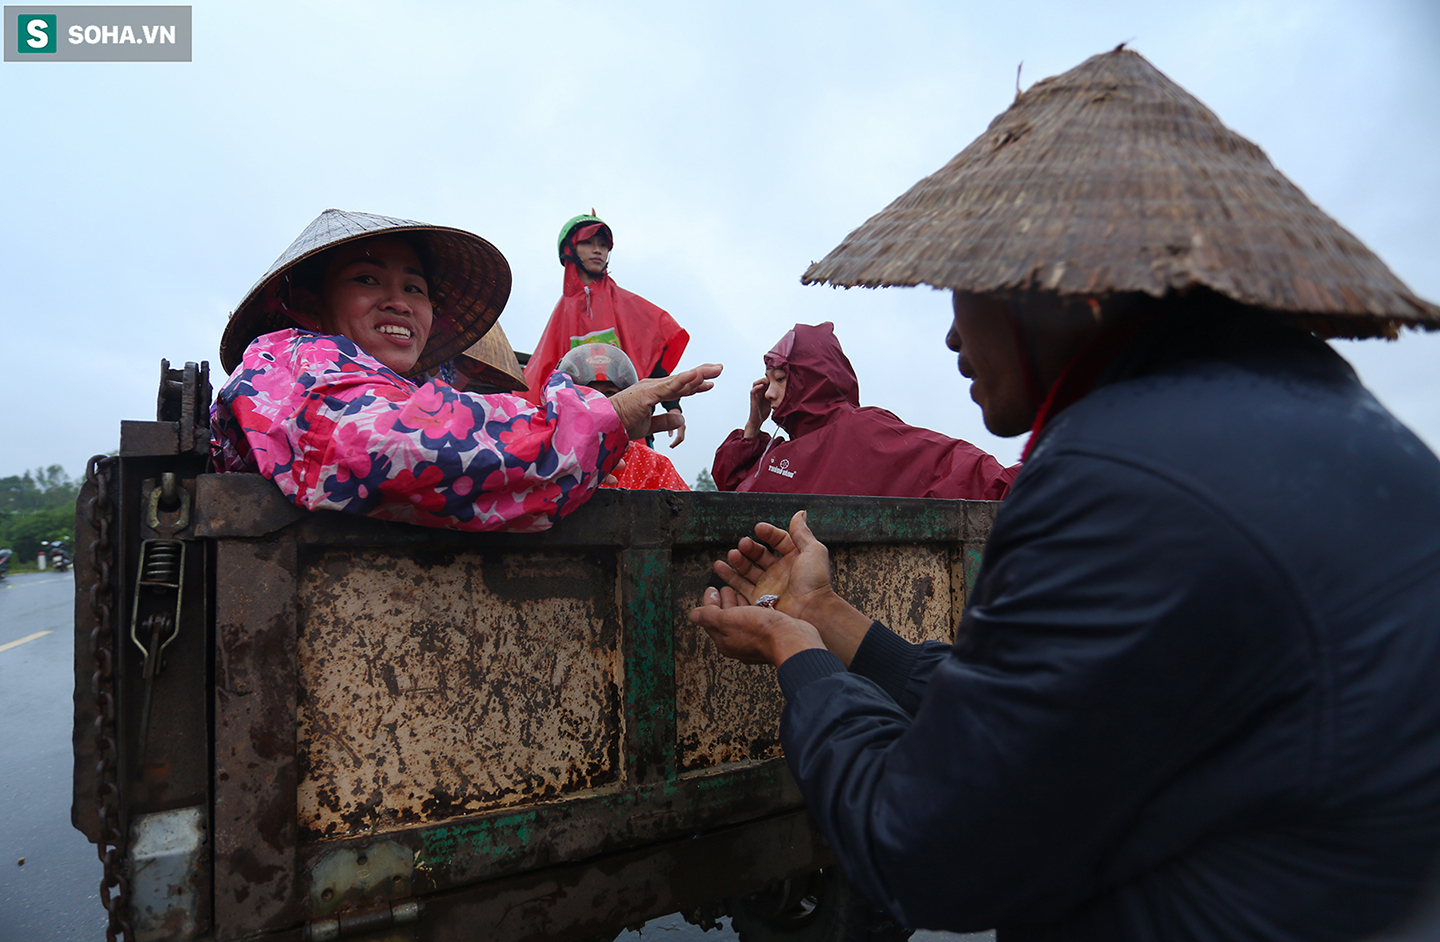 [Ảnh] Người phụ nữ ở Quảng Bình lao ra dòng nước lũ xin đồ ăn cho mẹ già bật khóc khi được cứu hộ khỏi ghe lật  - Ảnh 10.